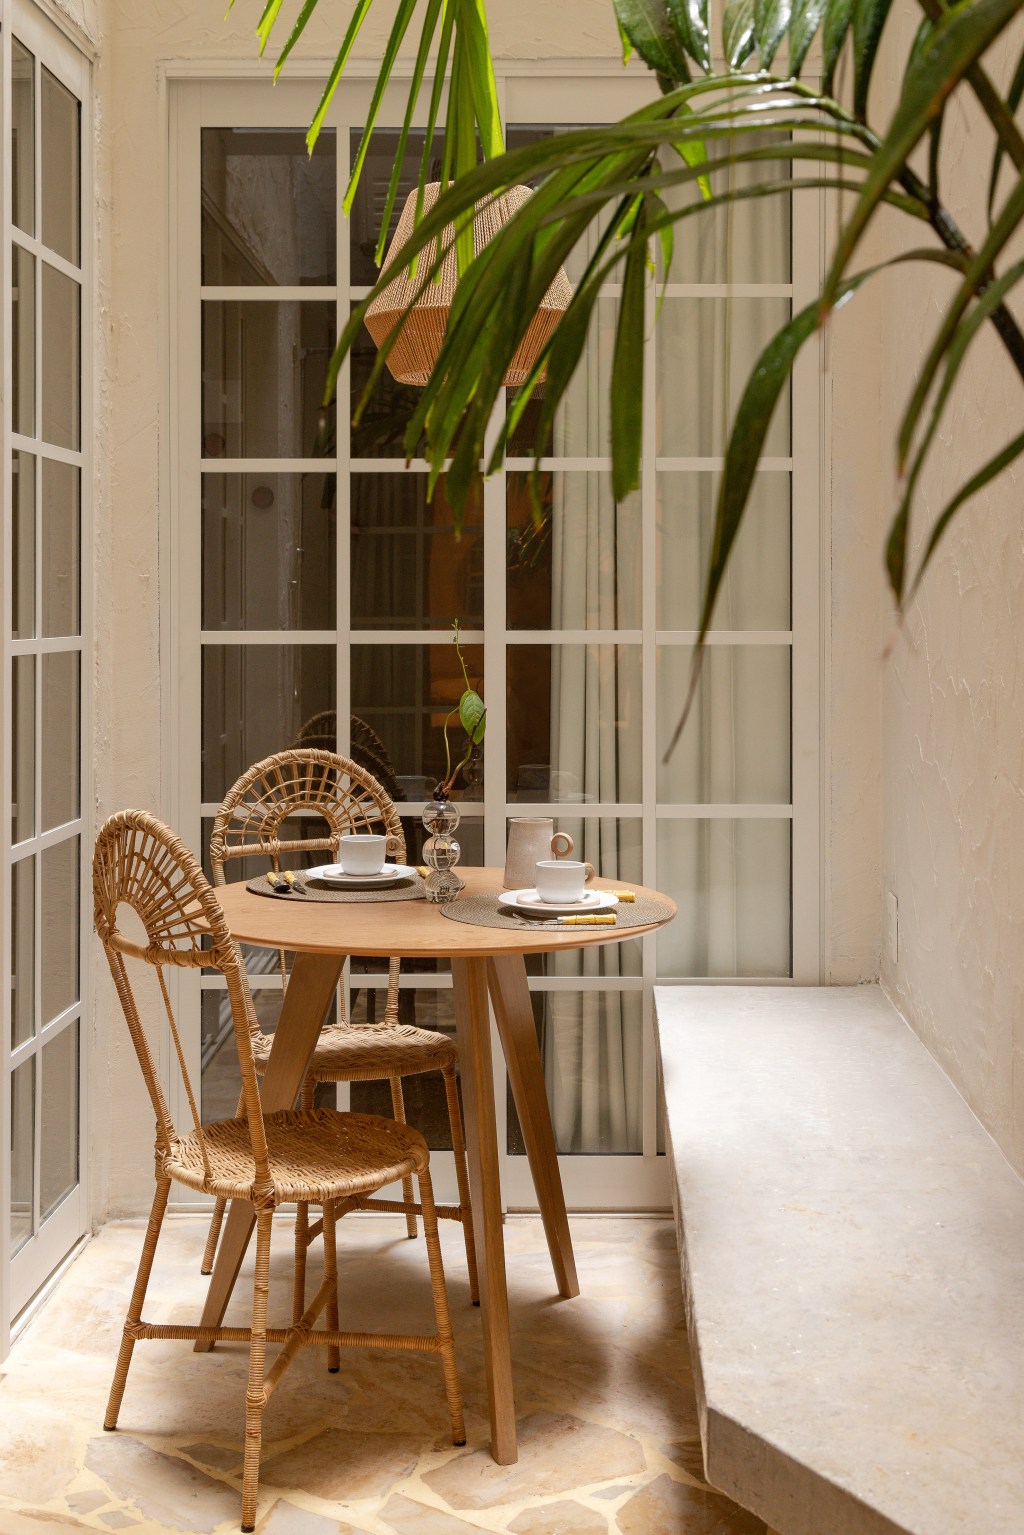 Reforma transforma imóvel de 45 m² em refúgio tropical. Projeto de Tauari Arquitetura. Na foto, pátio com mesa de refeições e banco.